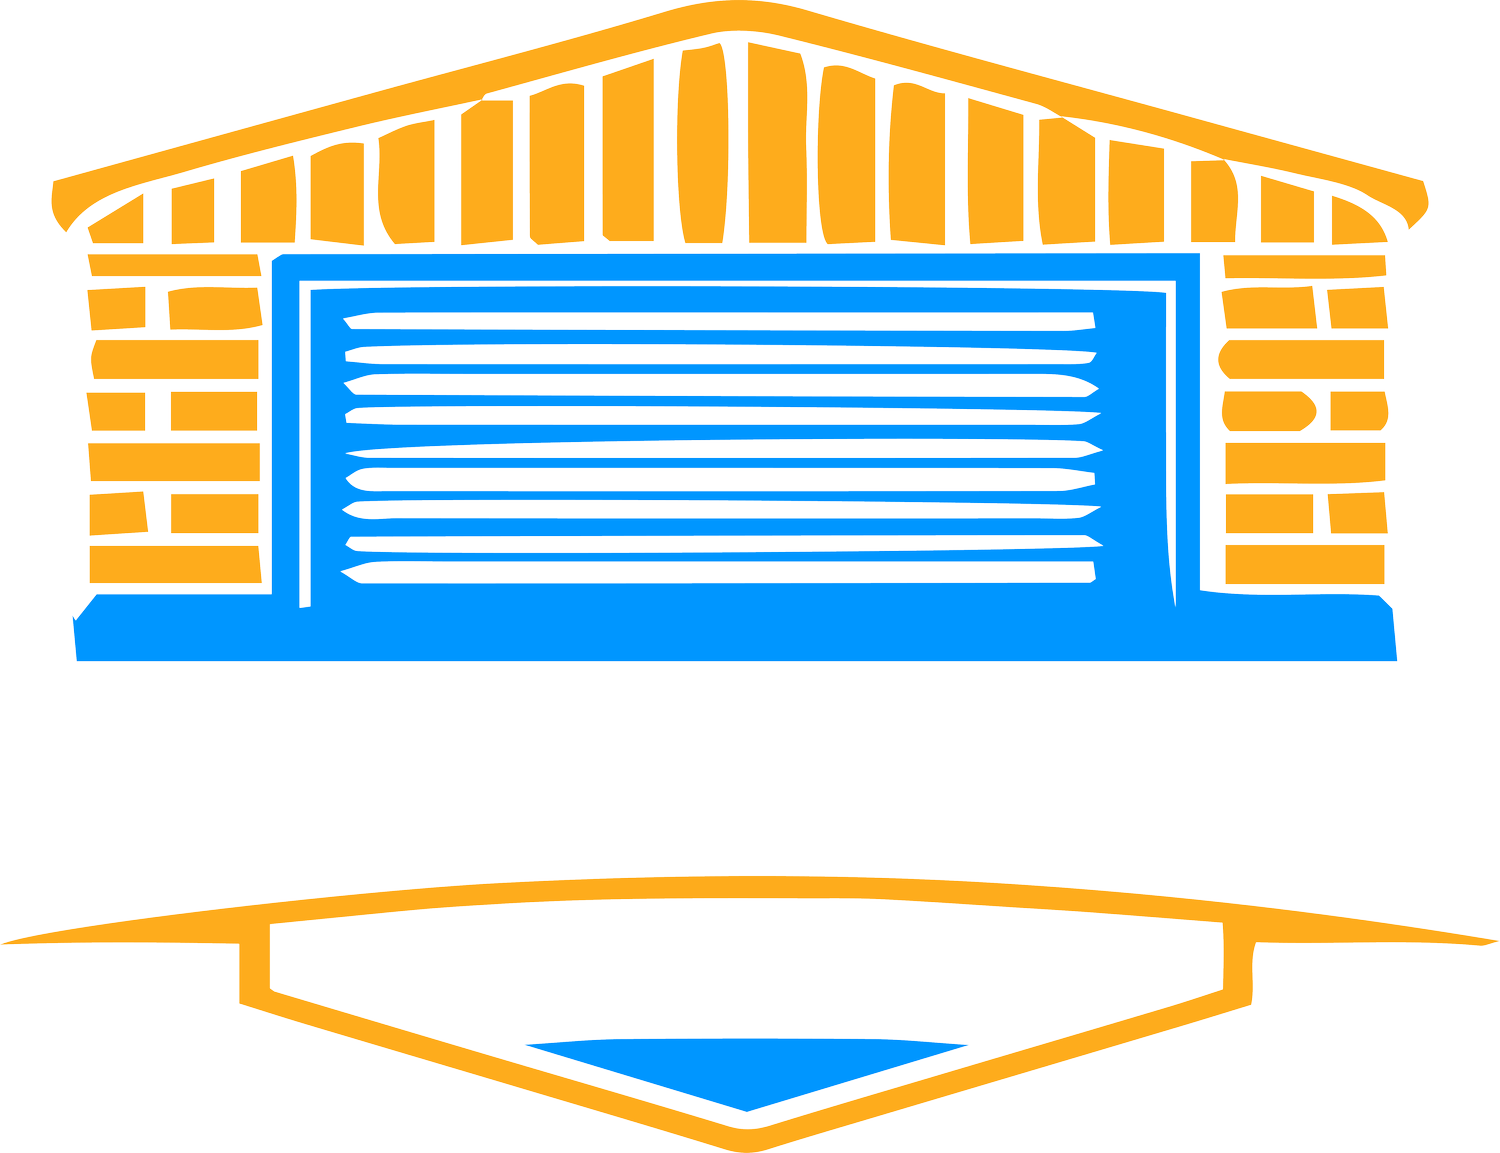 MISTER GARAGE  |  GARAGE DESIGN STUDIO